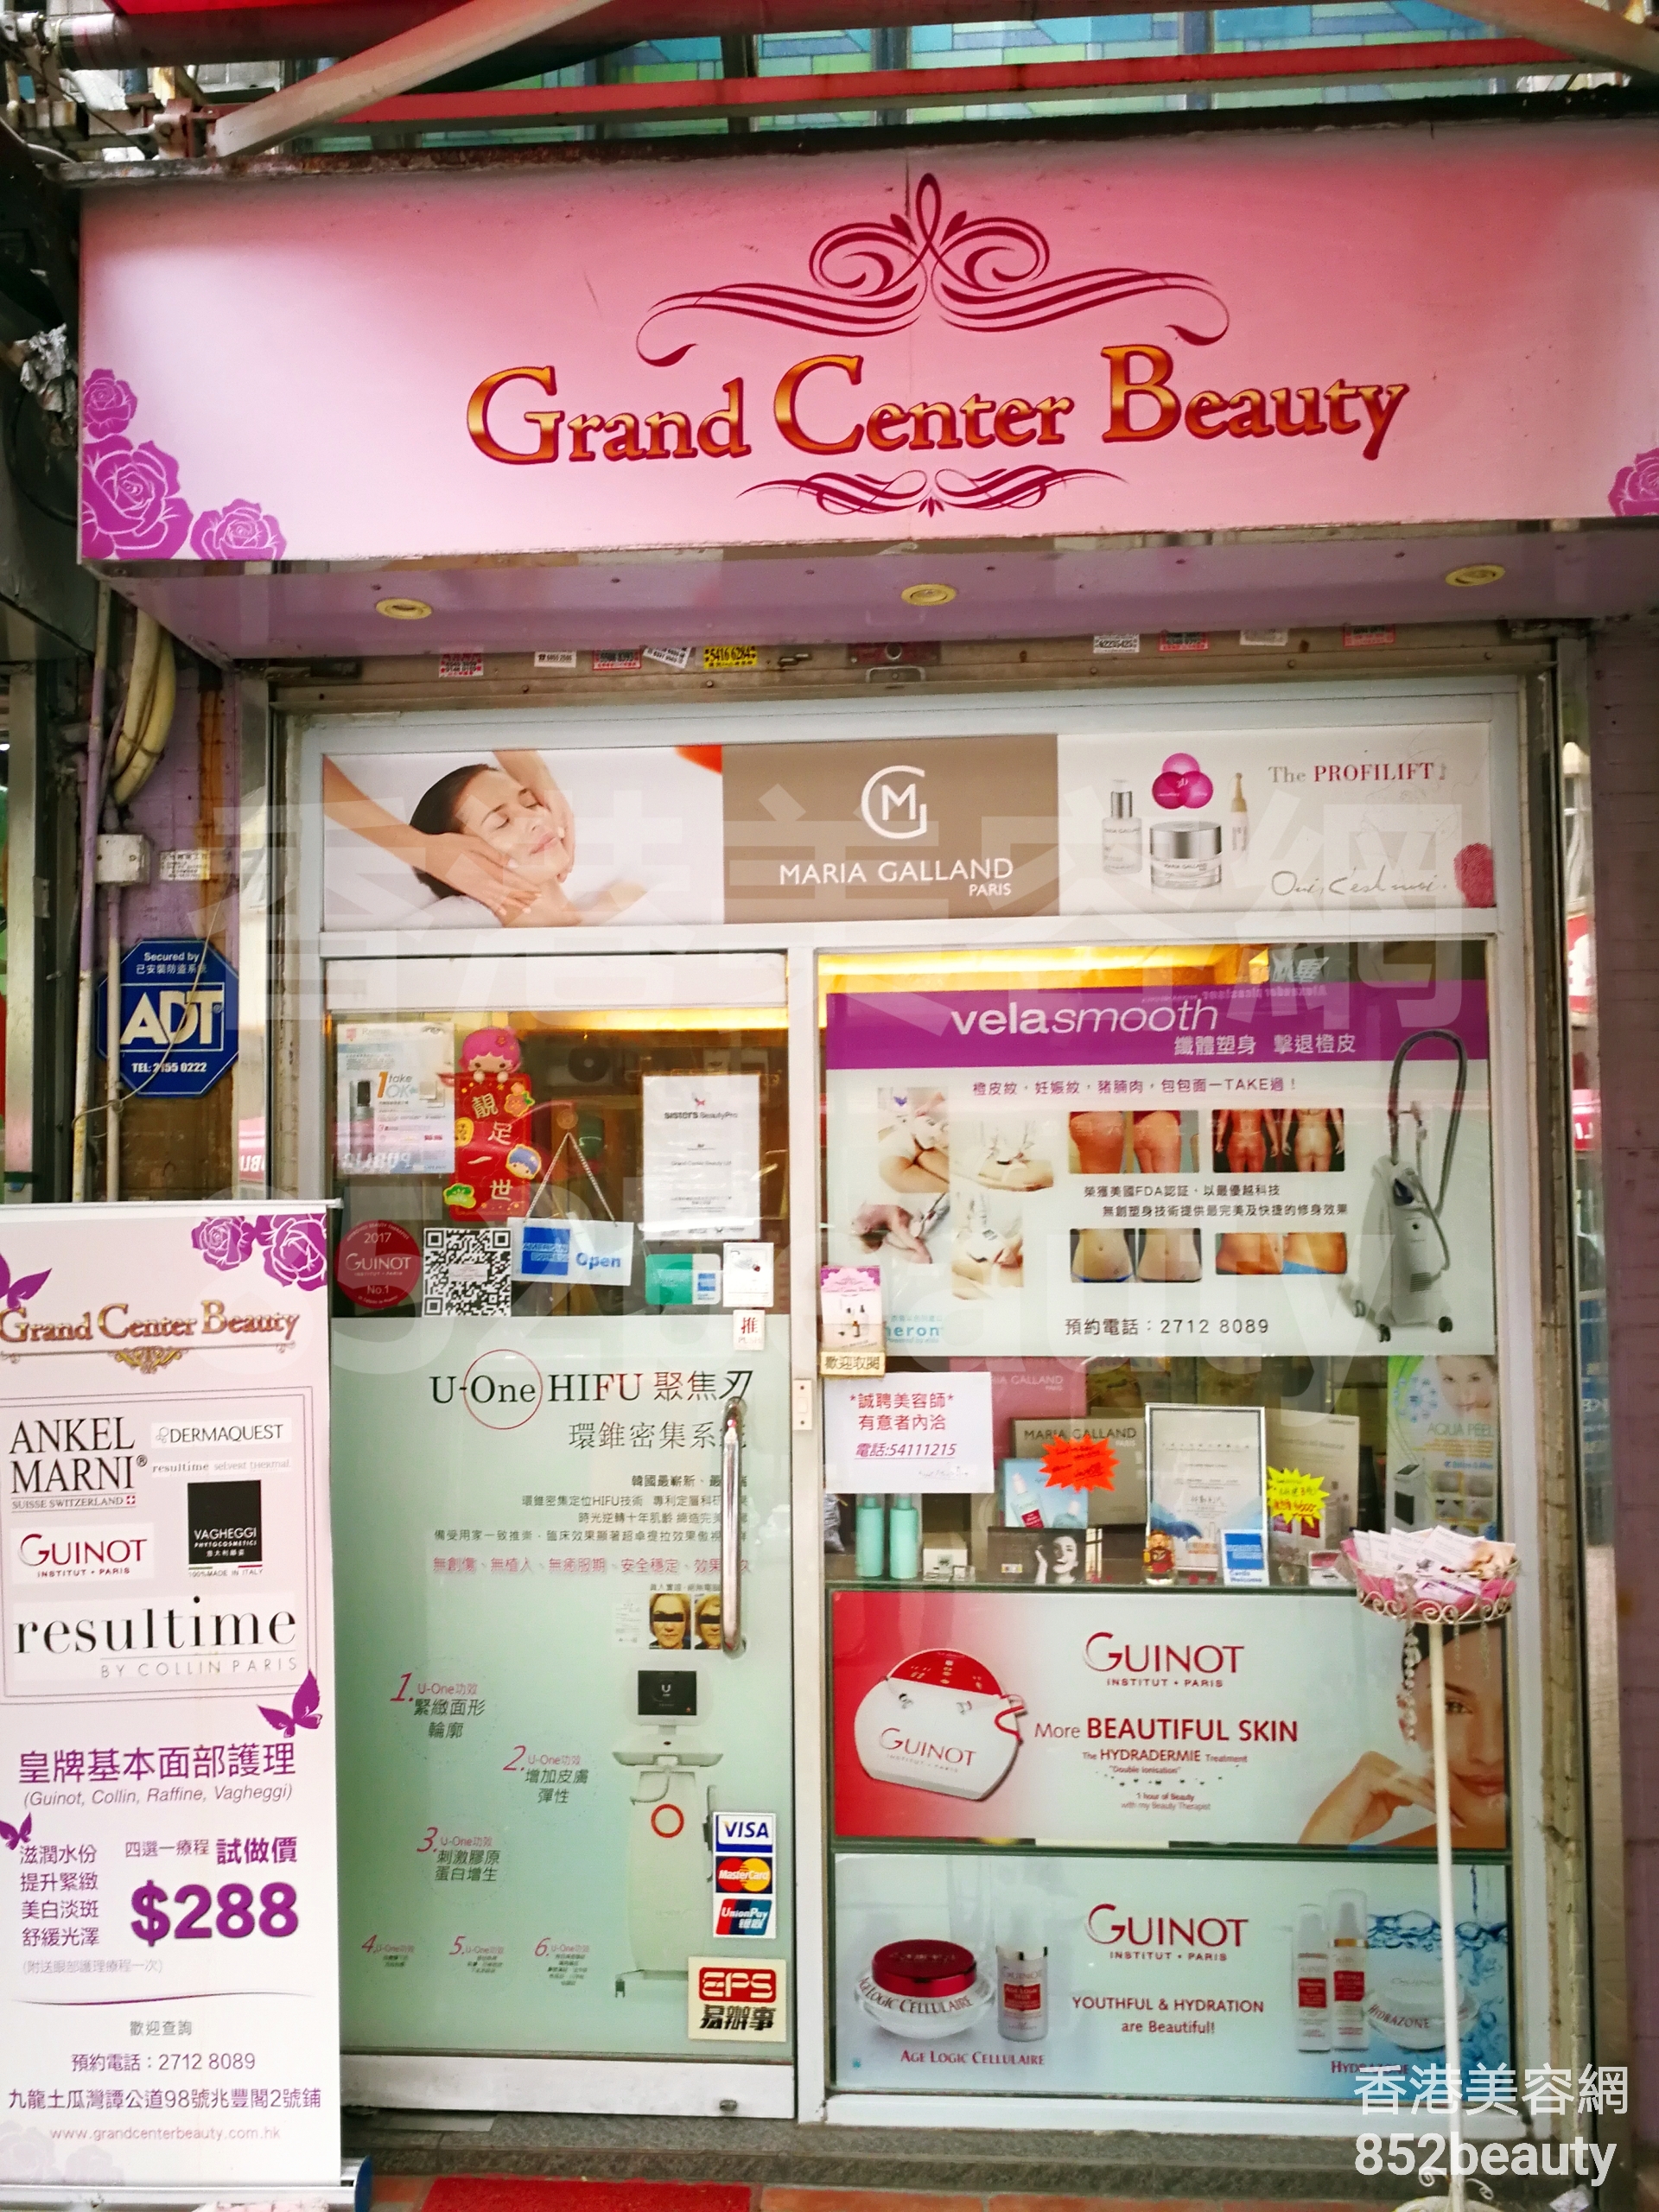 男士美容: Grand Center Beauty